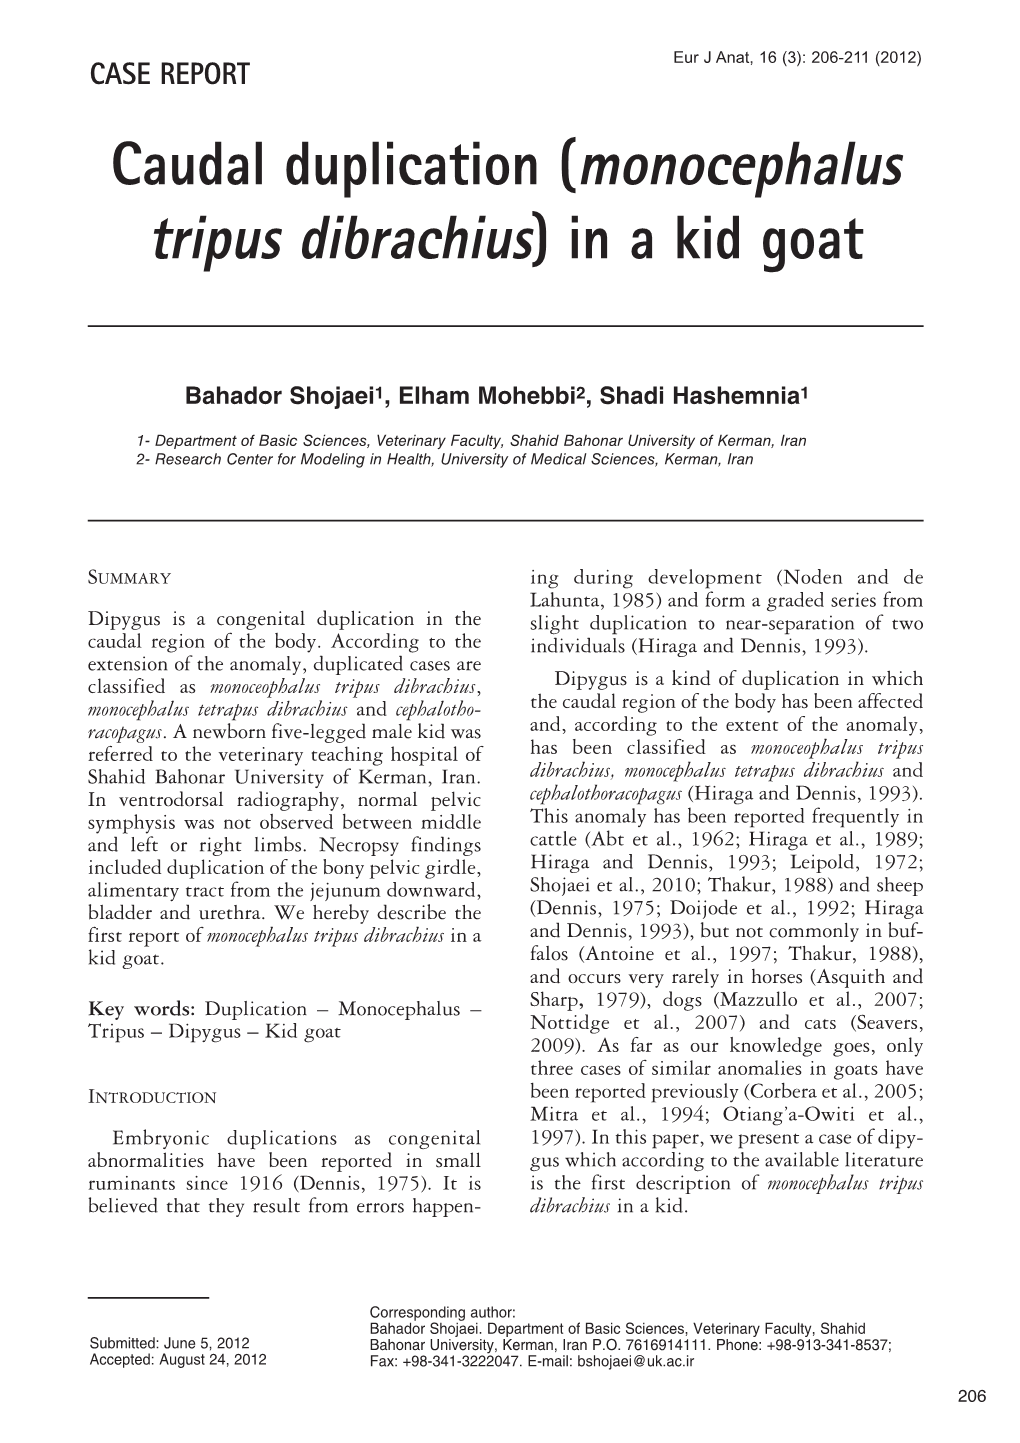 Caudal Duplication (Monocephalus Tripus Dibrachius) in a Kid Goat